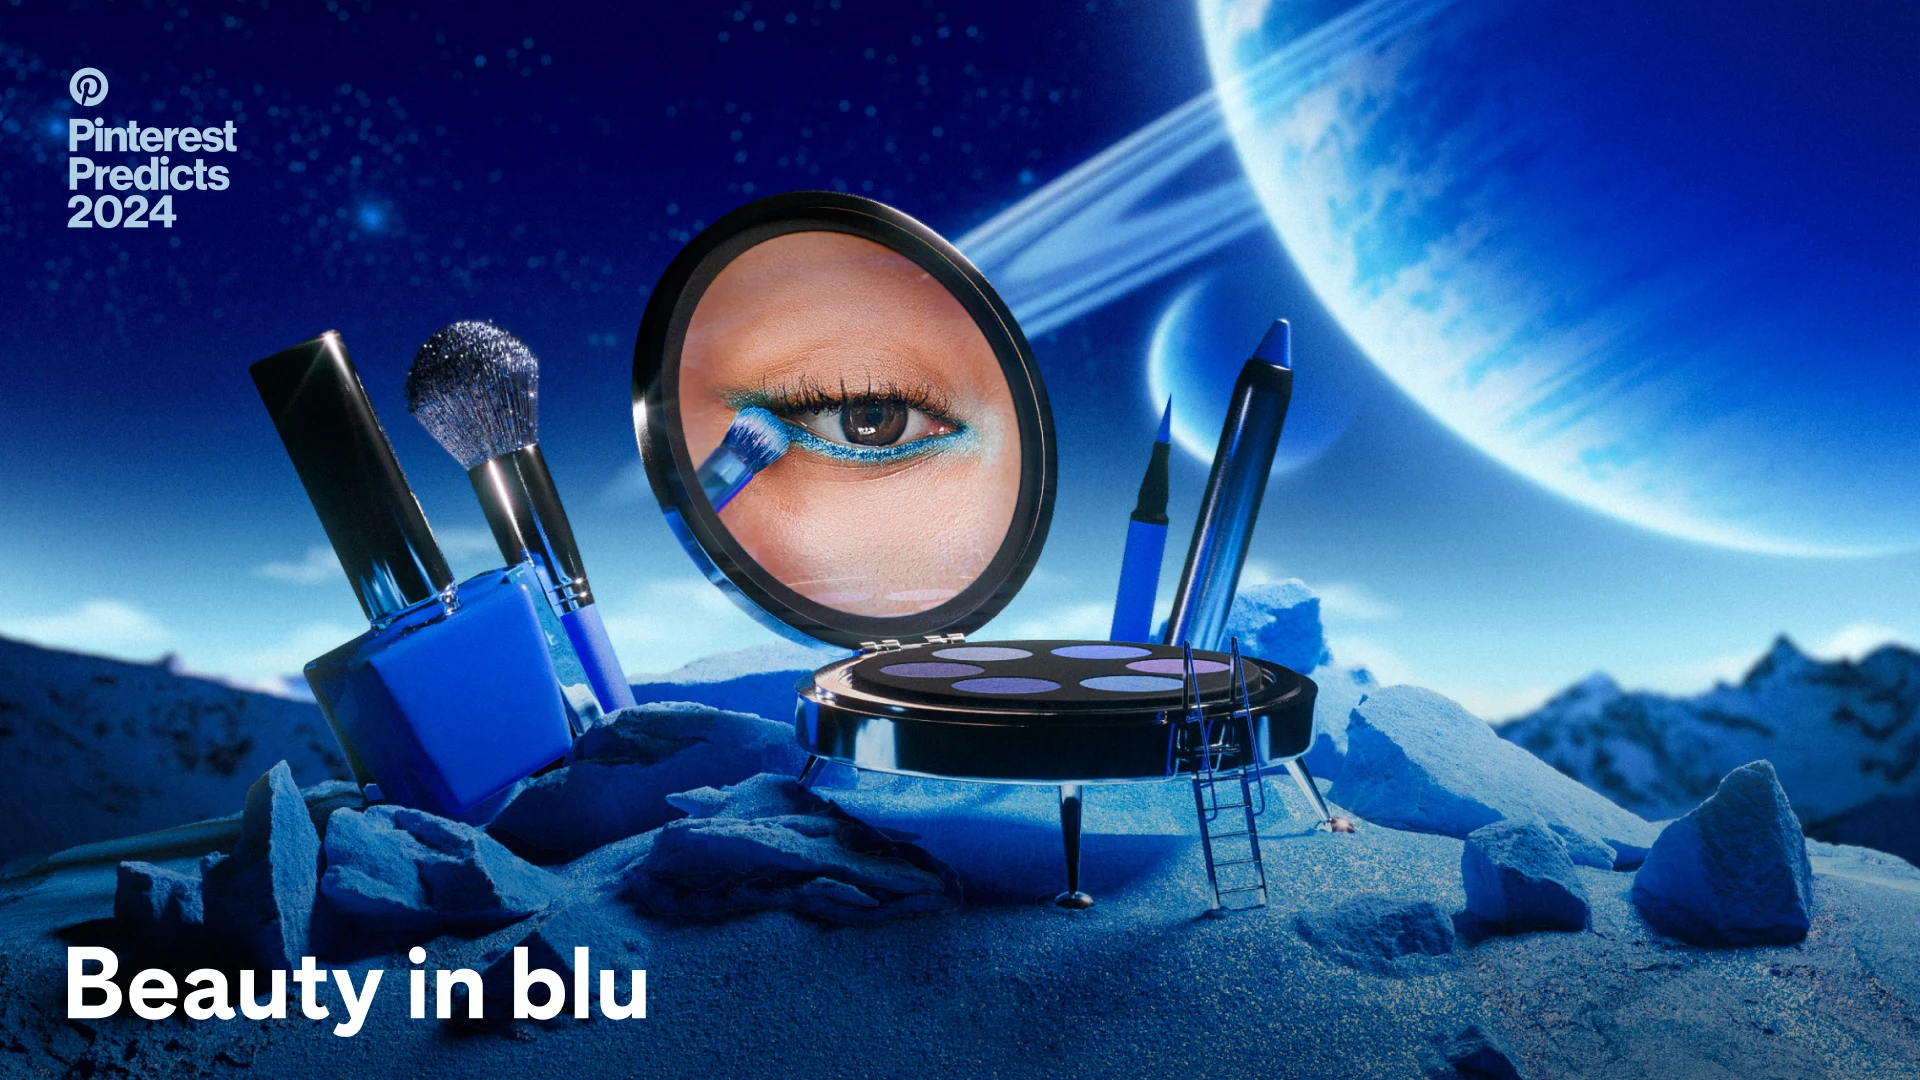 durante uno sbarco sulla Luna in miniatura, una tavolozza occhi è l'astronave e rivela un trucco per gli occhi blu, affiancato da matite blu, pennello e smalto per unghie